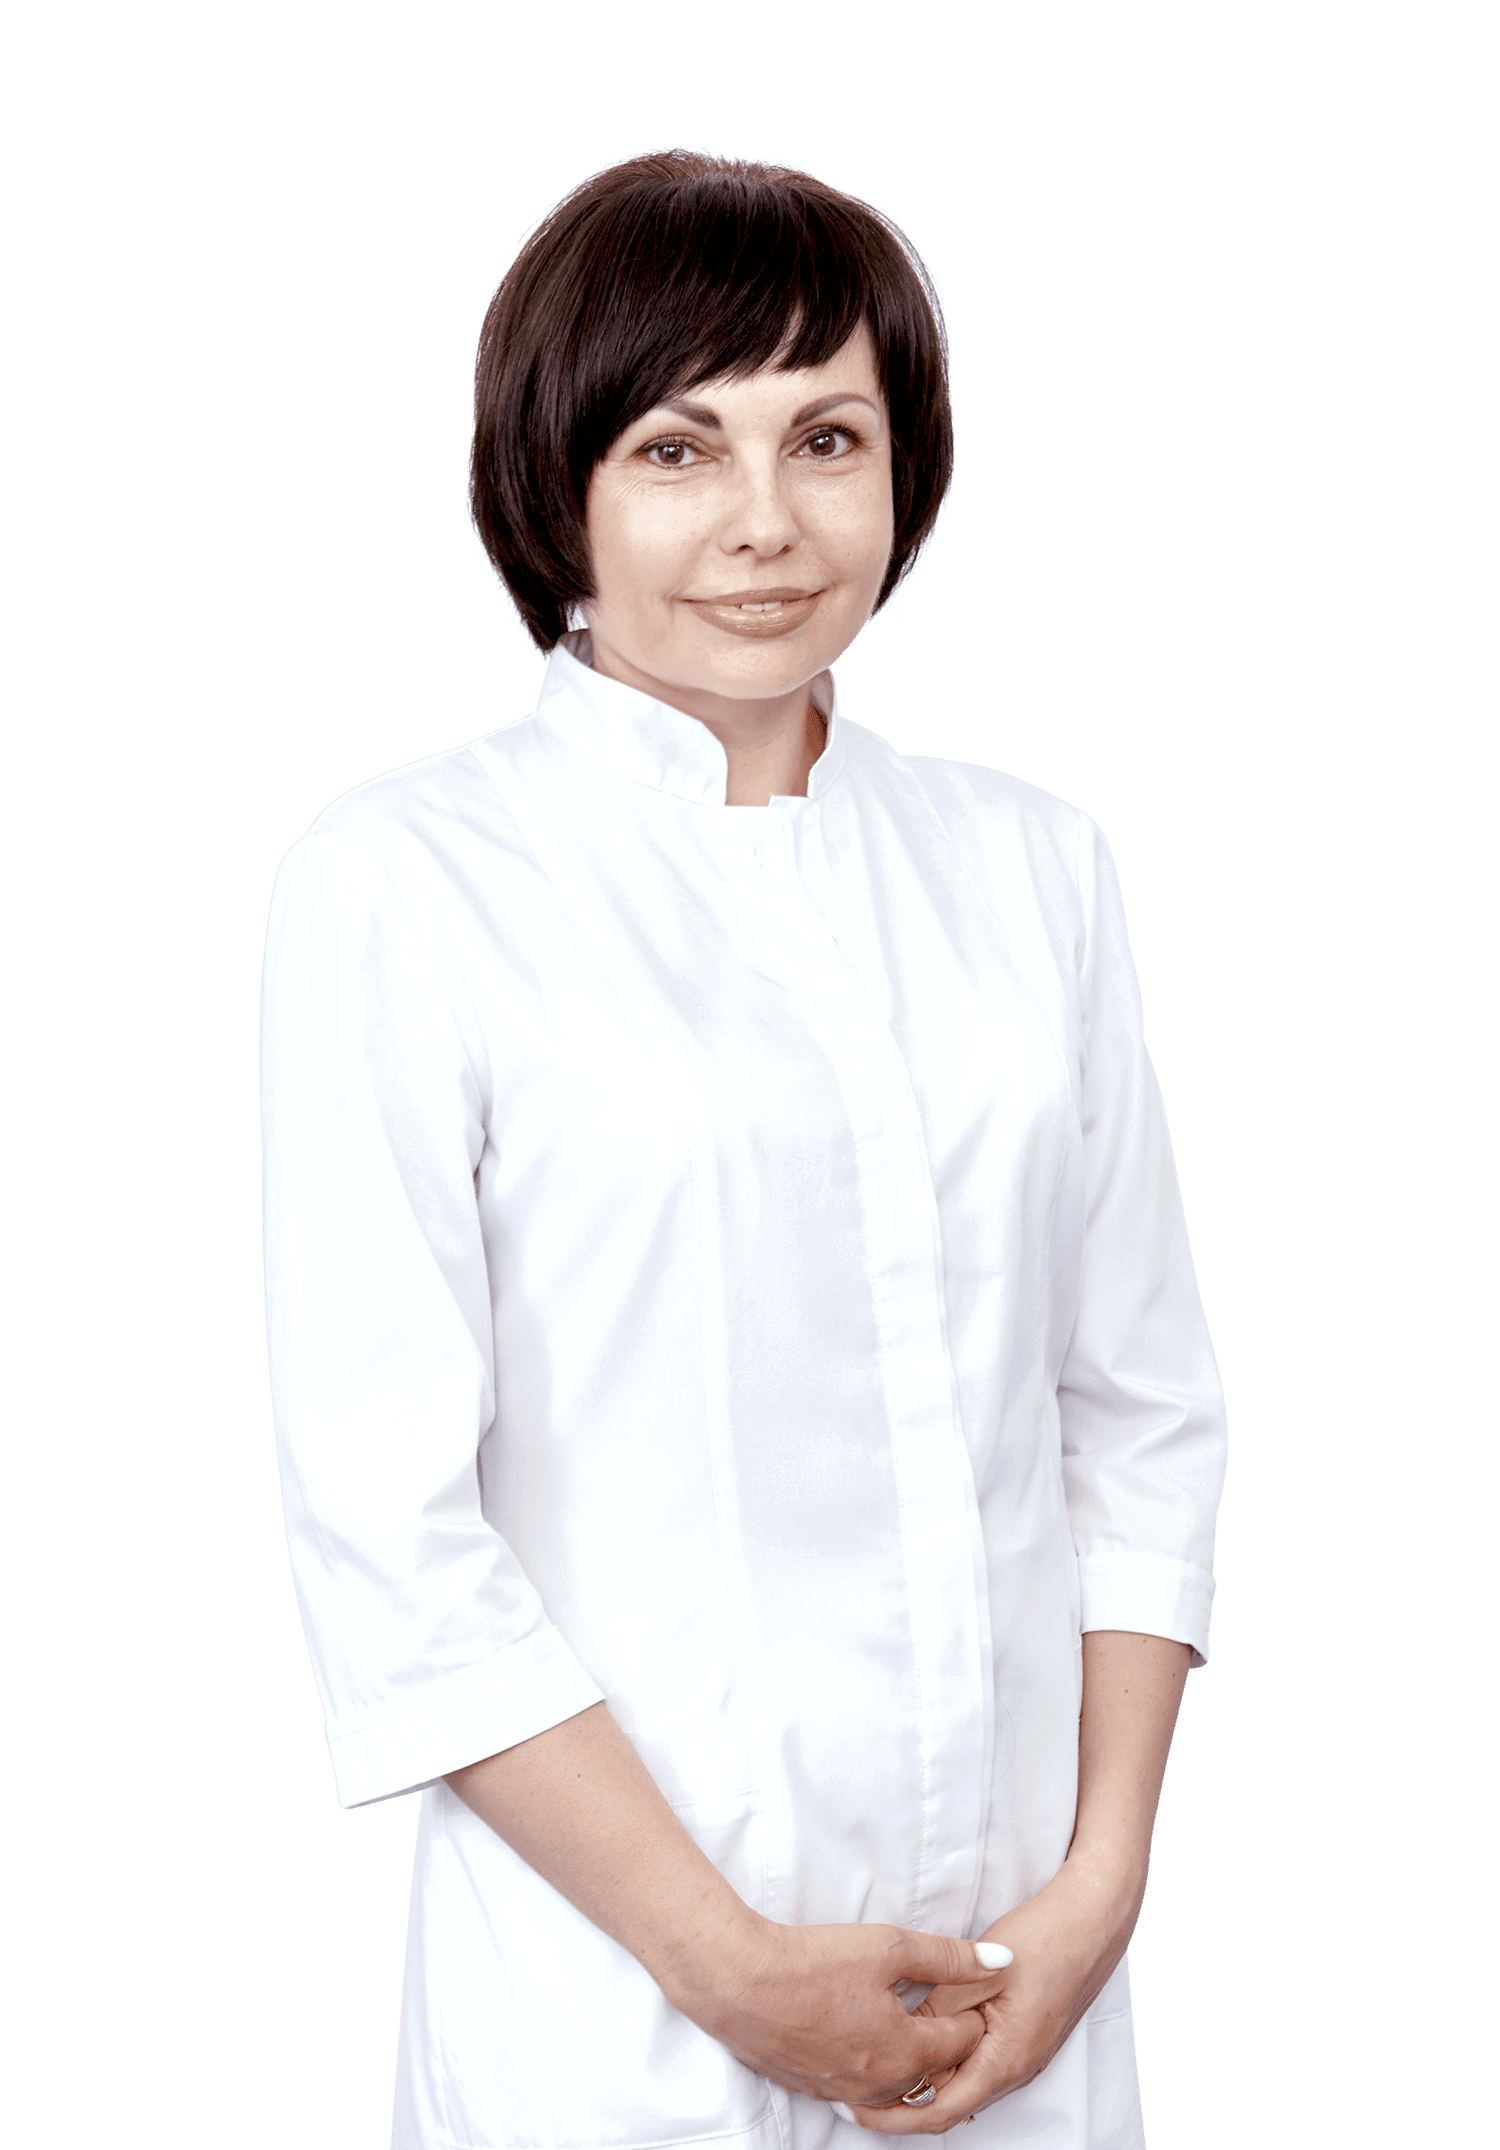 Vitsinskaia Olena Ihorevna